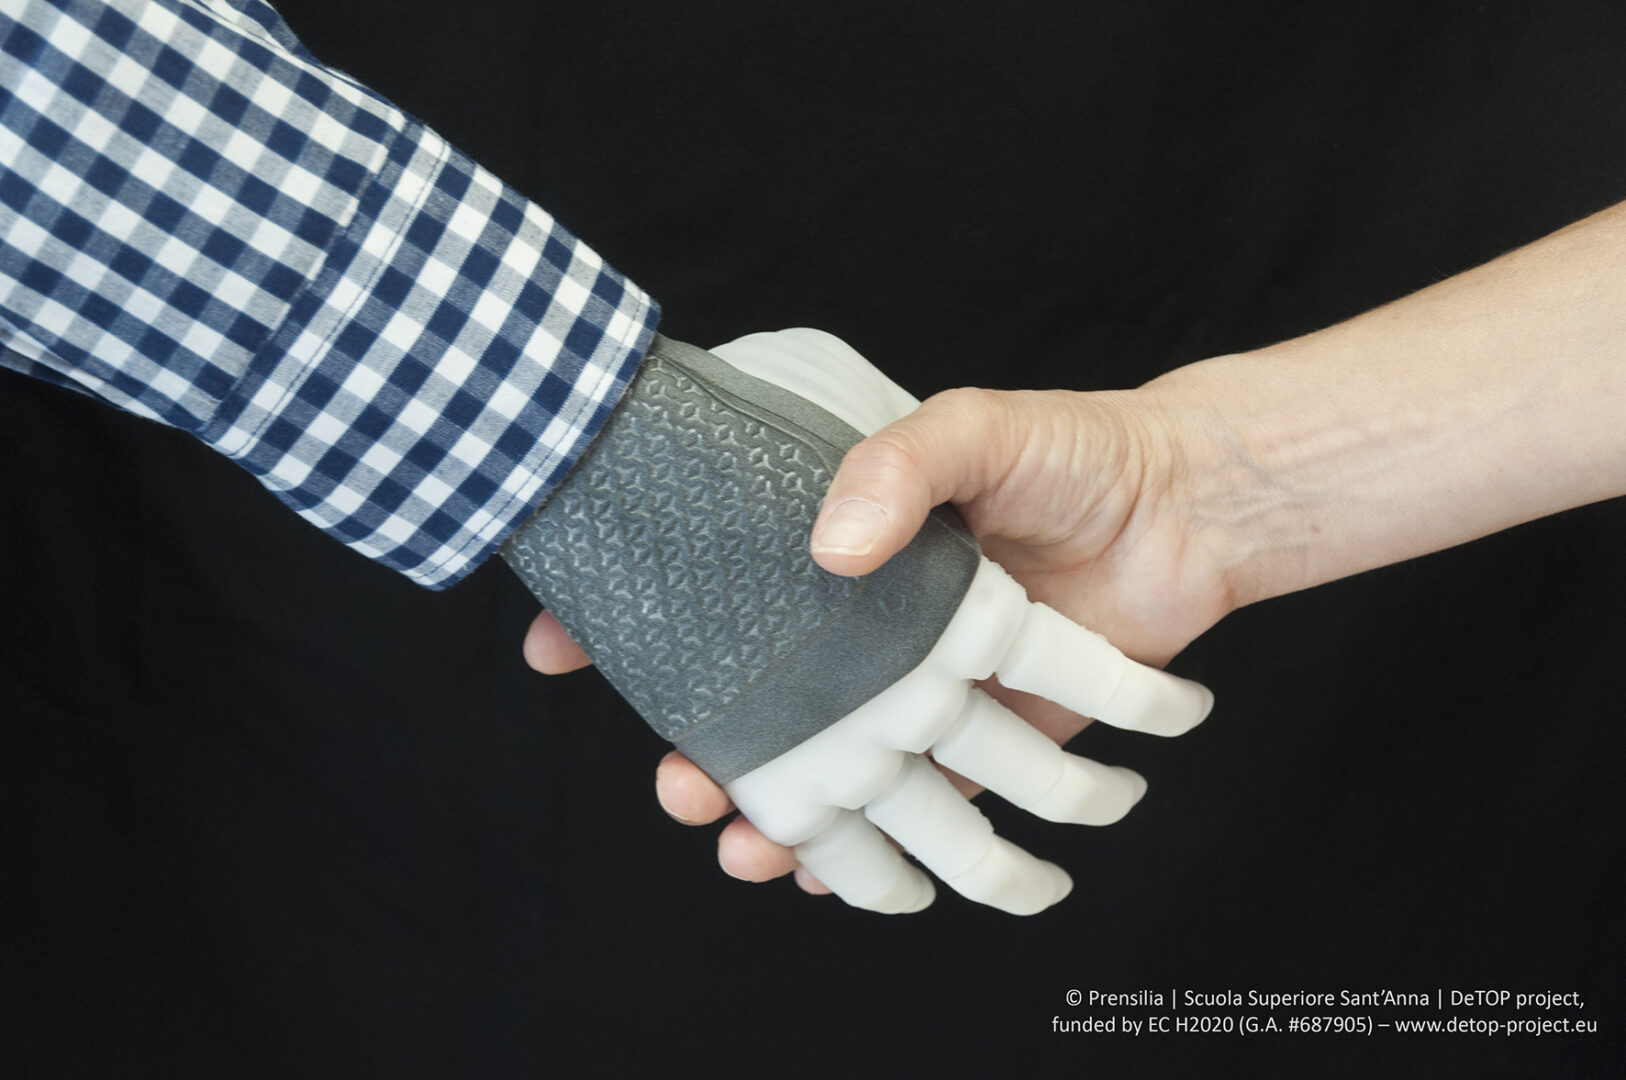 La prima protesi bionica connessa a scheletro e nervi: una grande svolta nella tecnologia medica